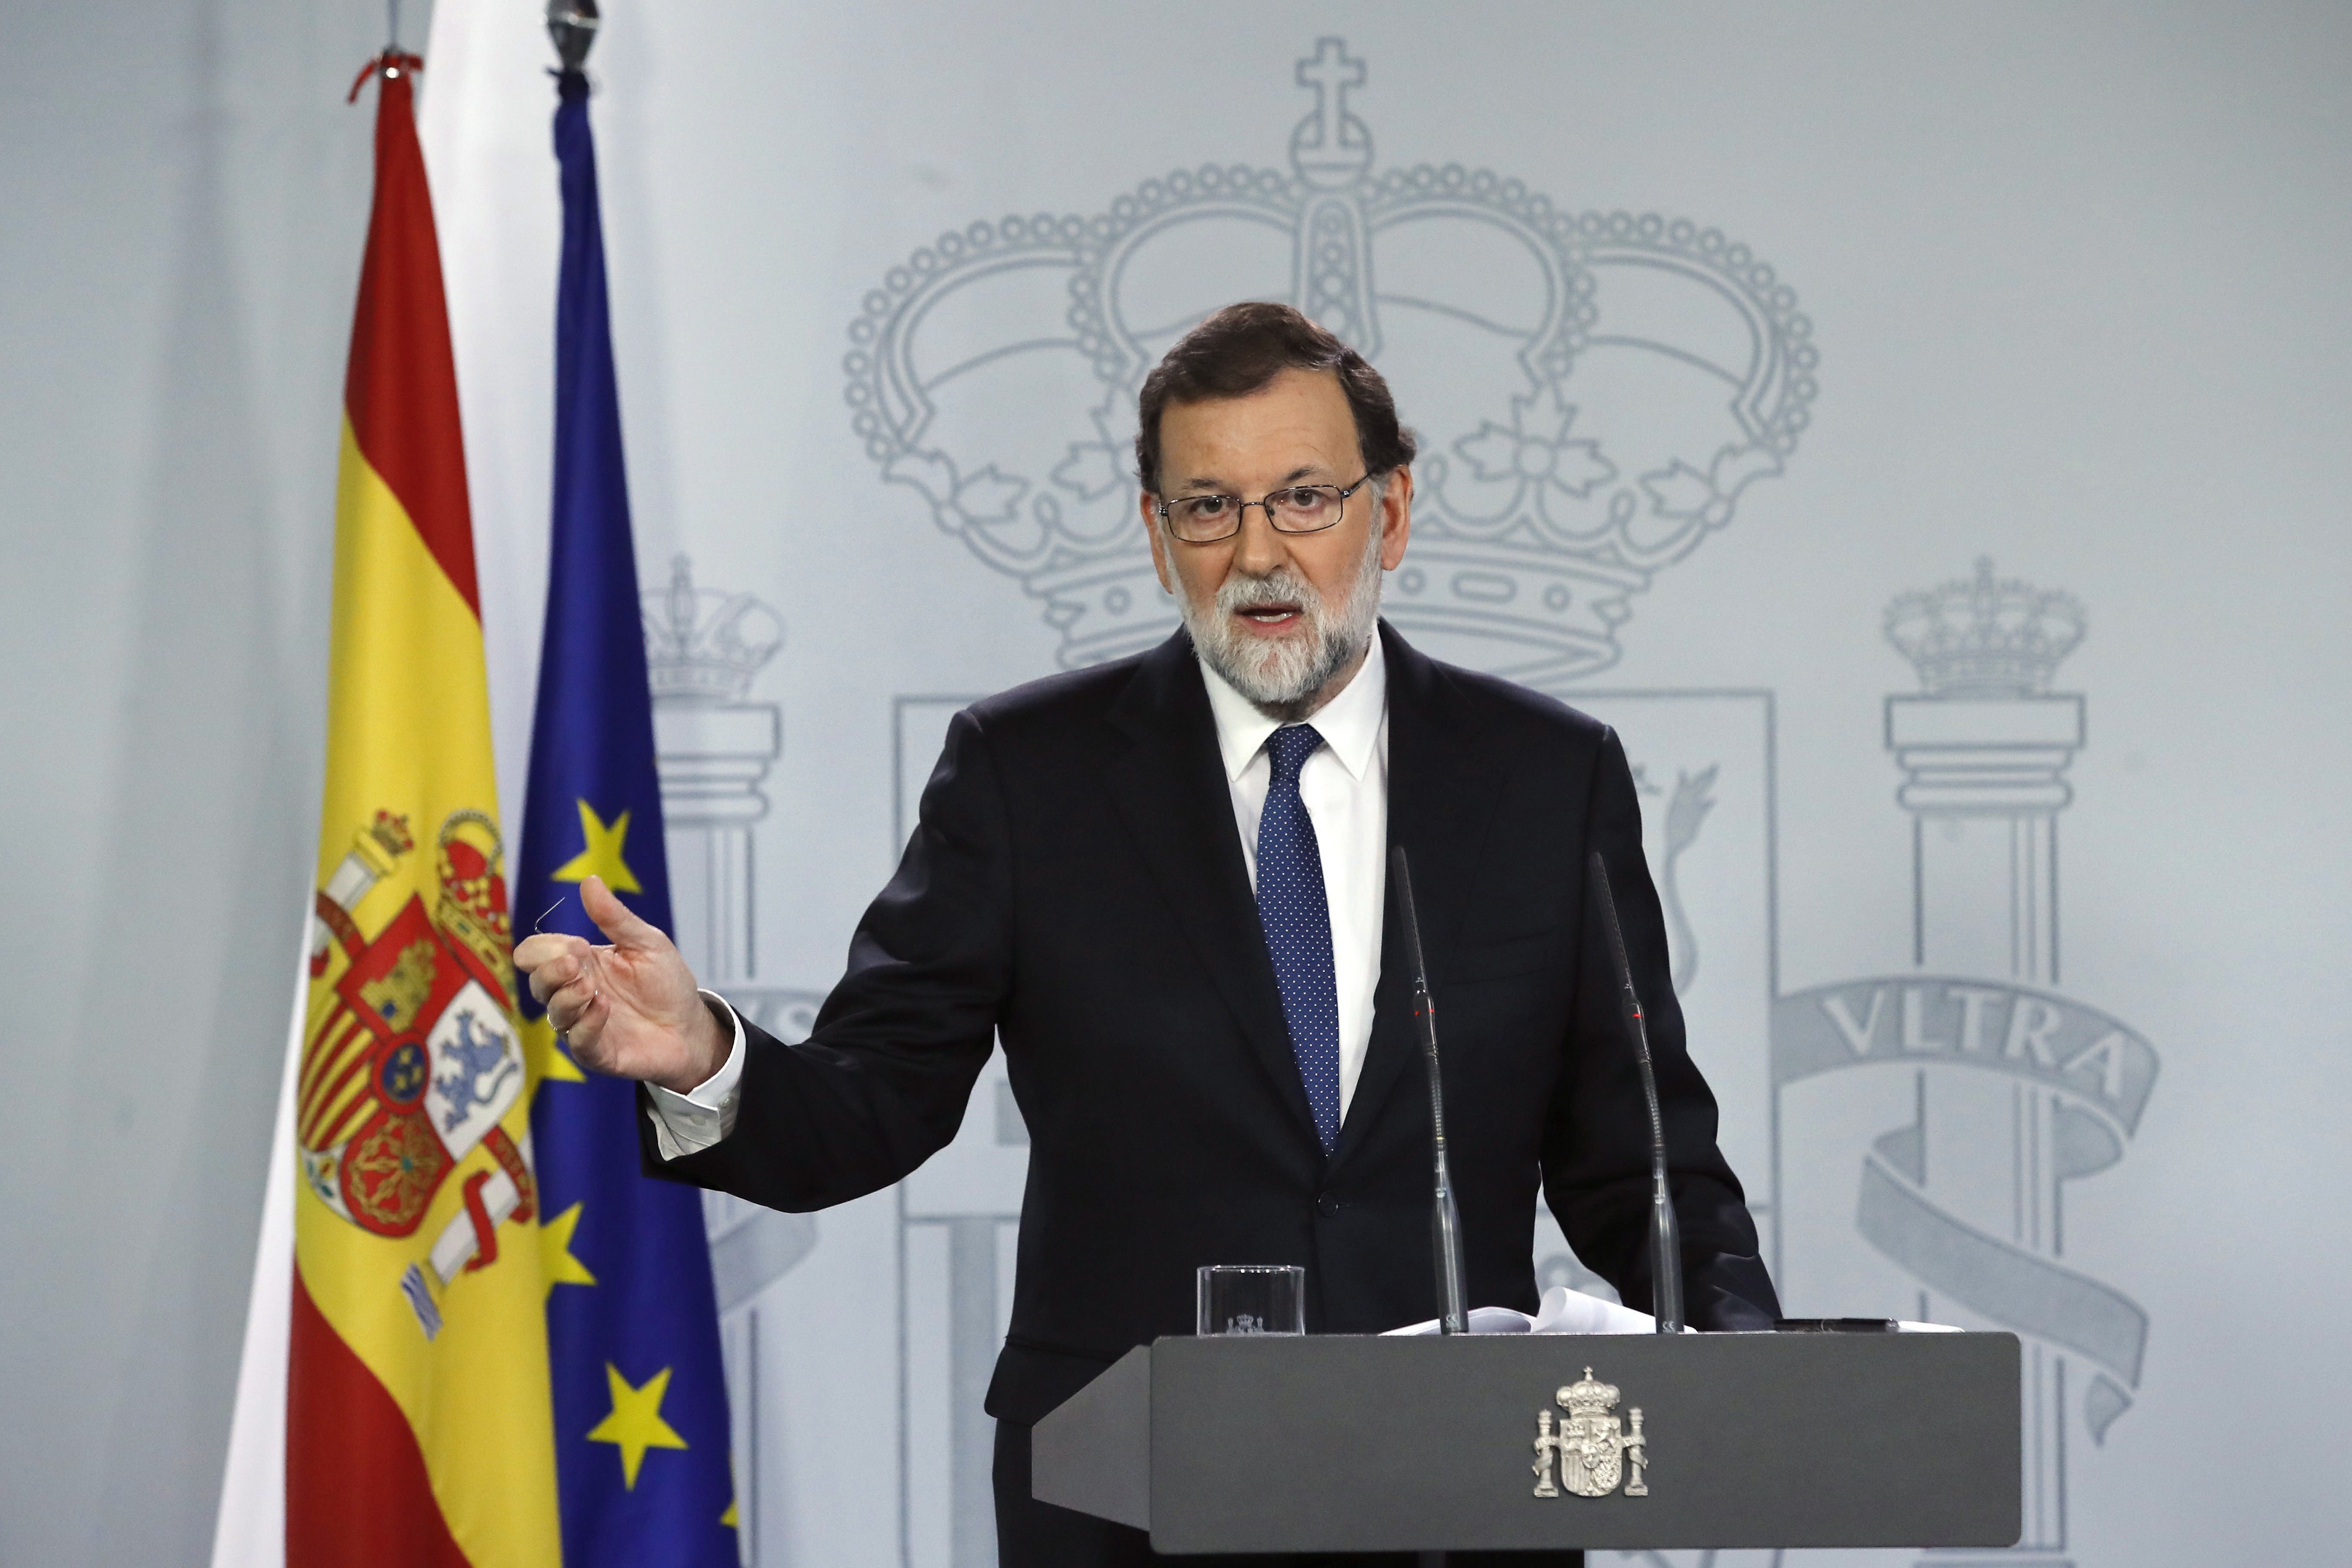 El PP denuncia el "victimisme" de Puigdemont davant l'aplicació del 155